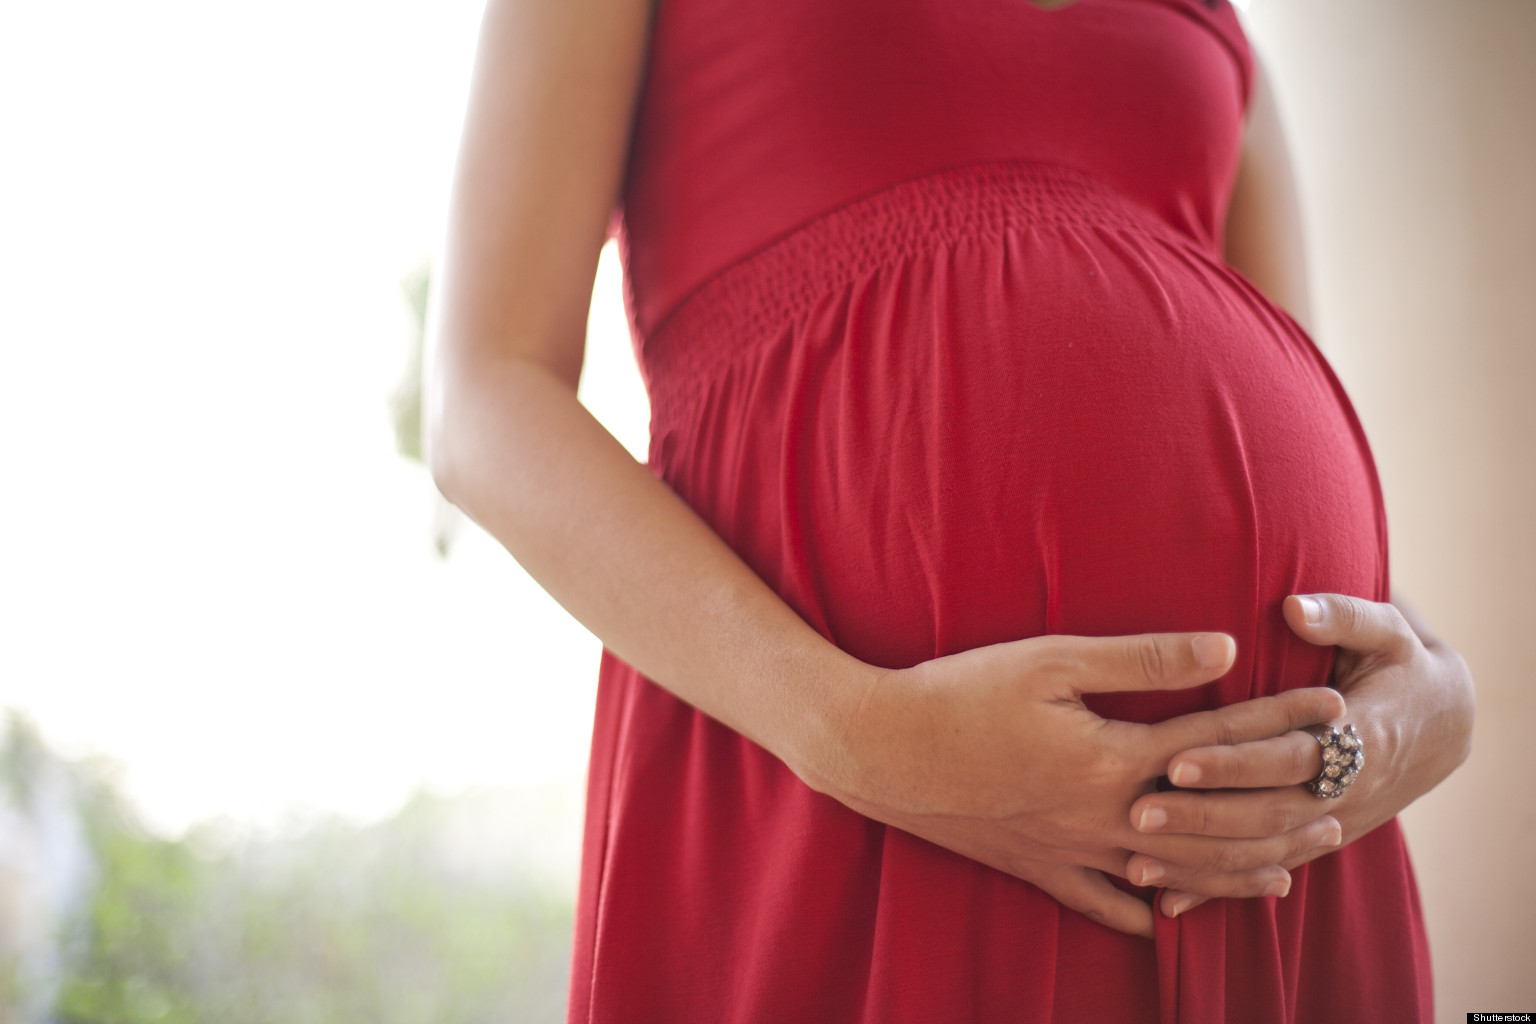 Անհավանական դեպքեր հղիության և փոքրիկի ծնունդի հետ կապված